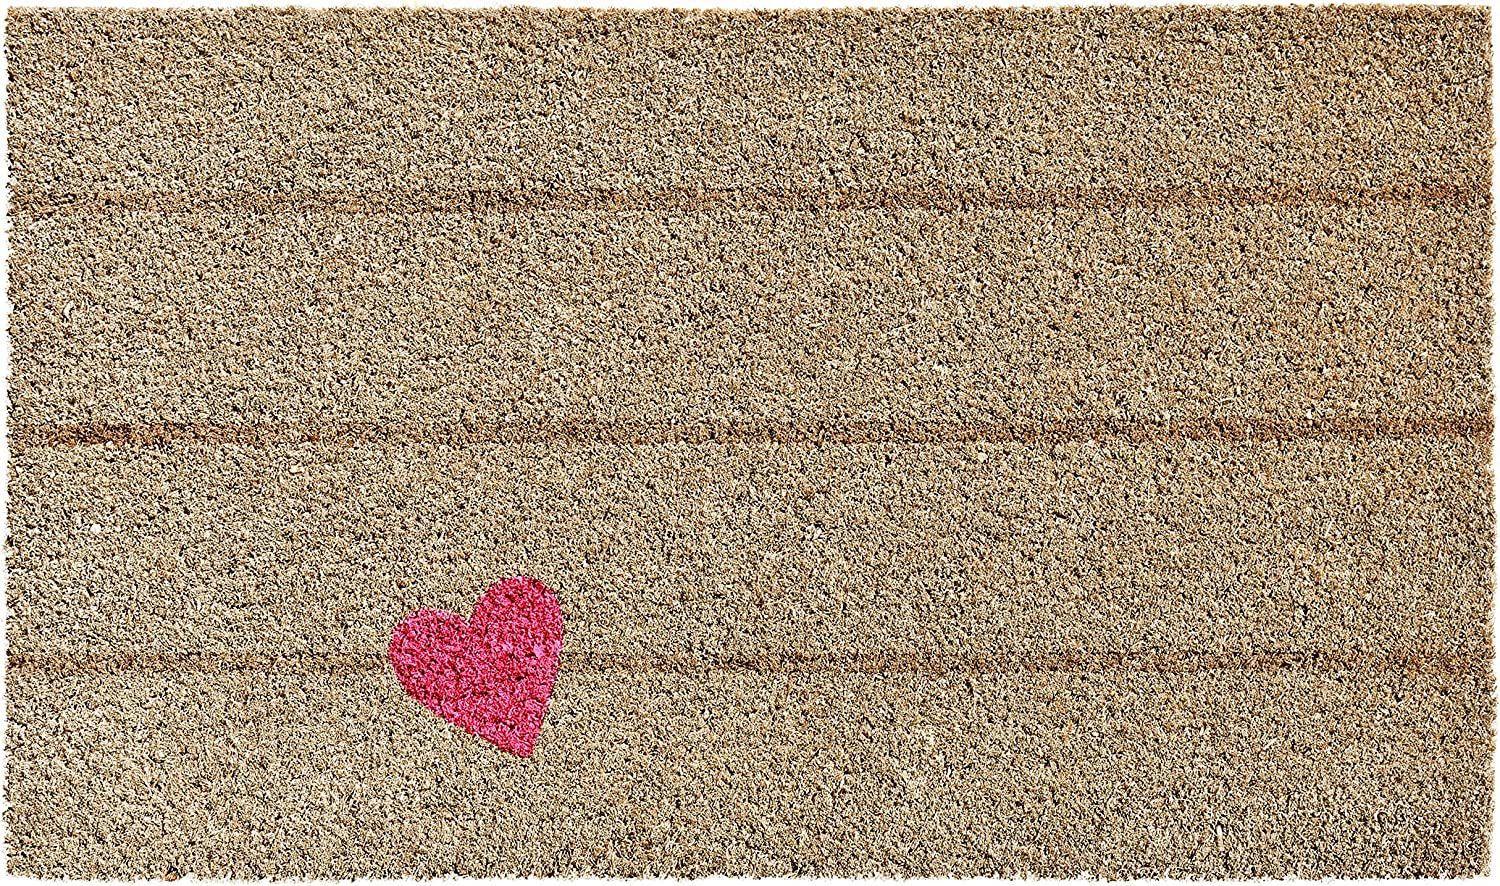 Calloway Mills 105071729 Pink Heart Doormat | Amazon (US)